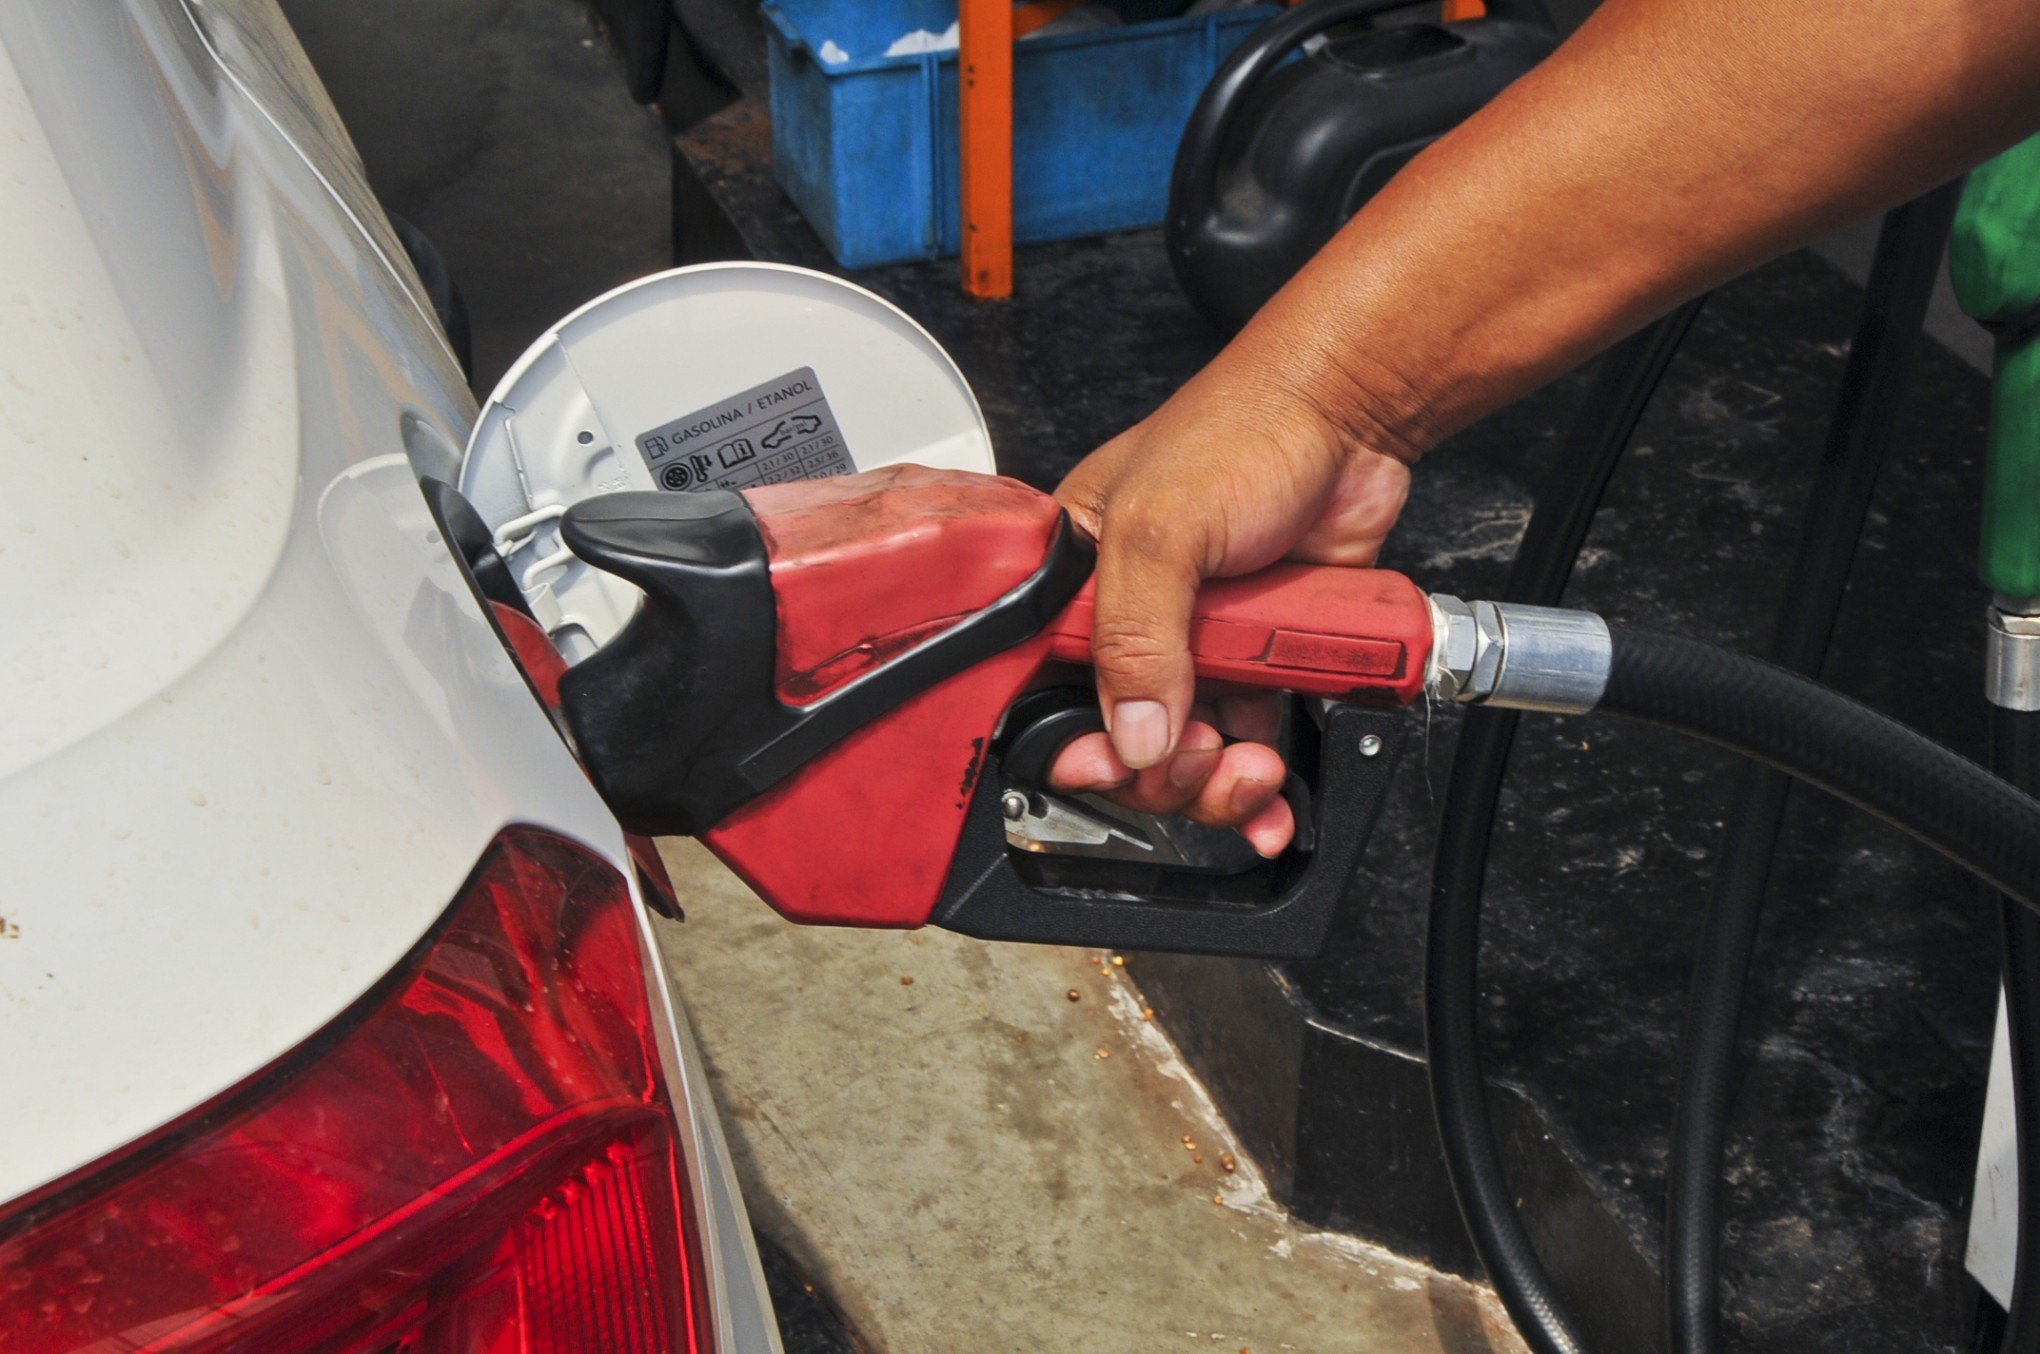 Gasolina mais cara? Mudança nas distribuidoras pode significar alteração nos preços dos combustíveis; entenda